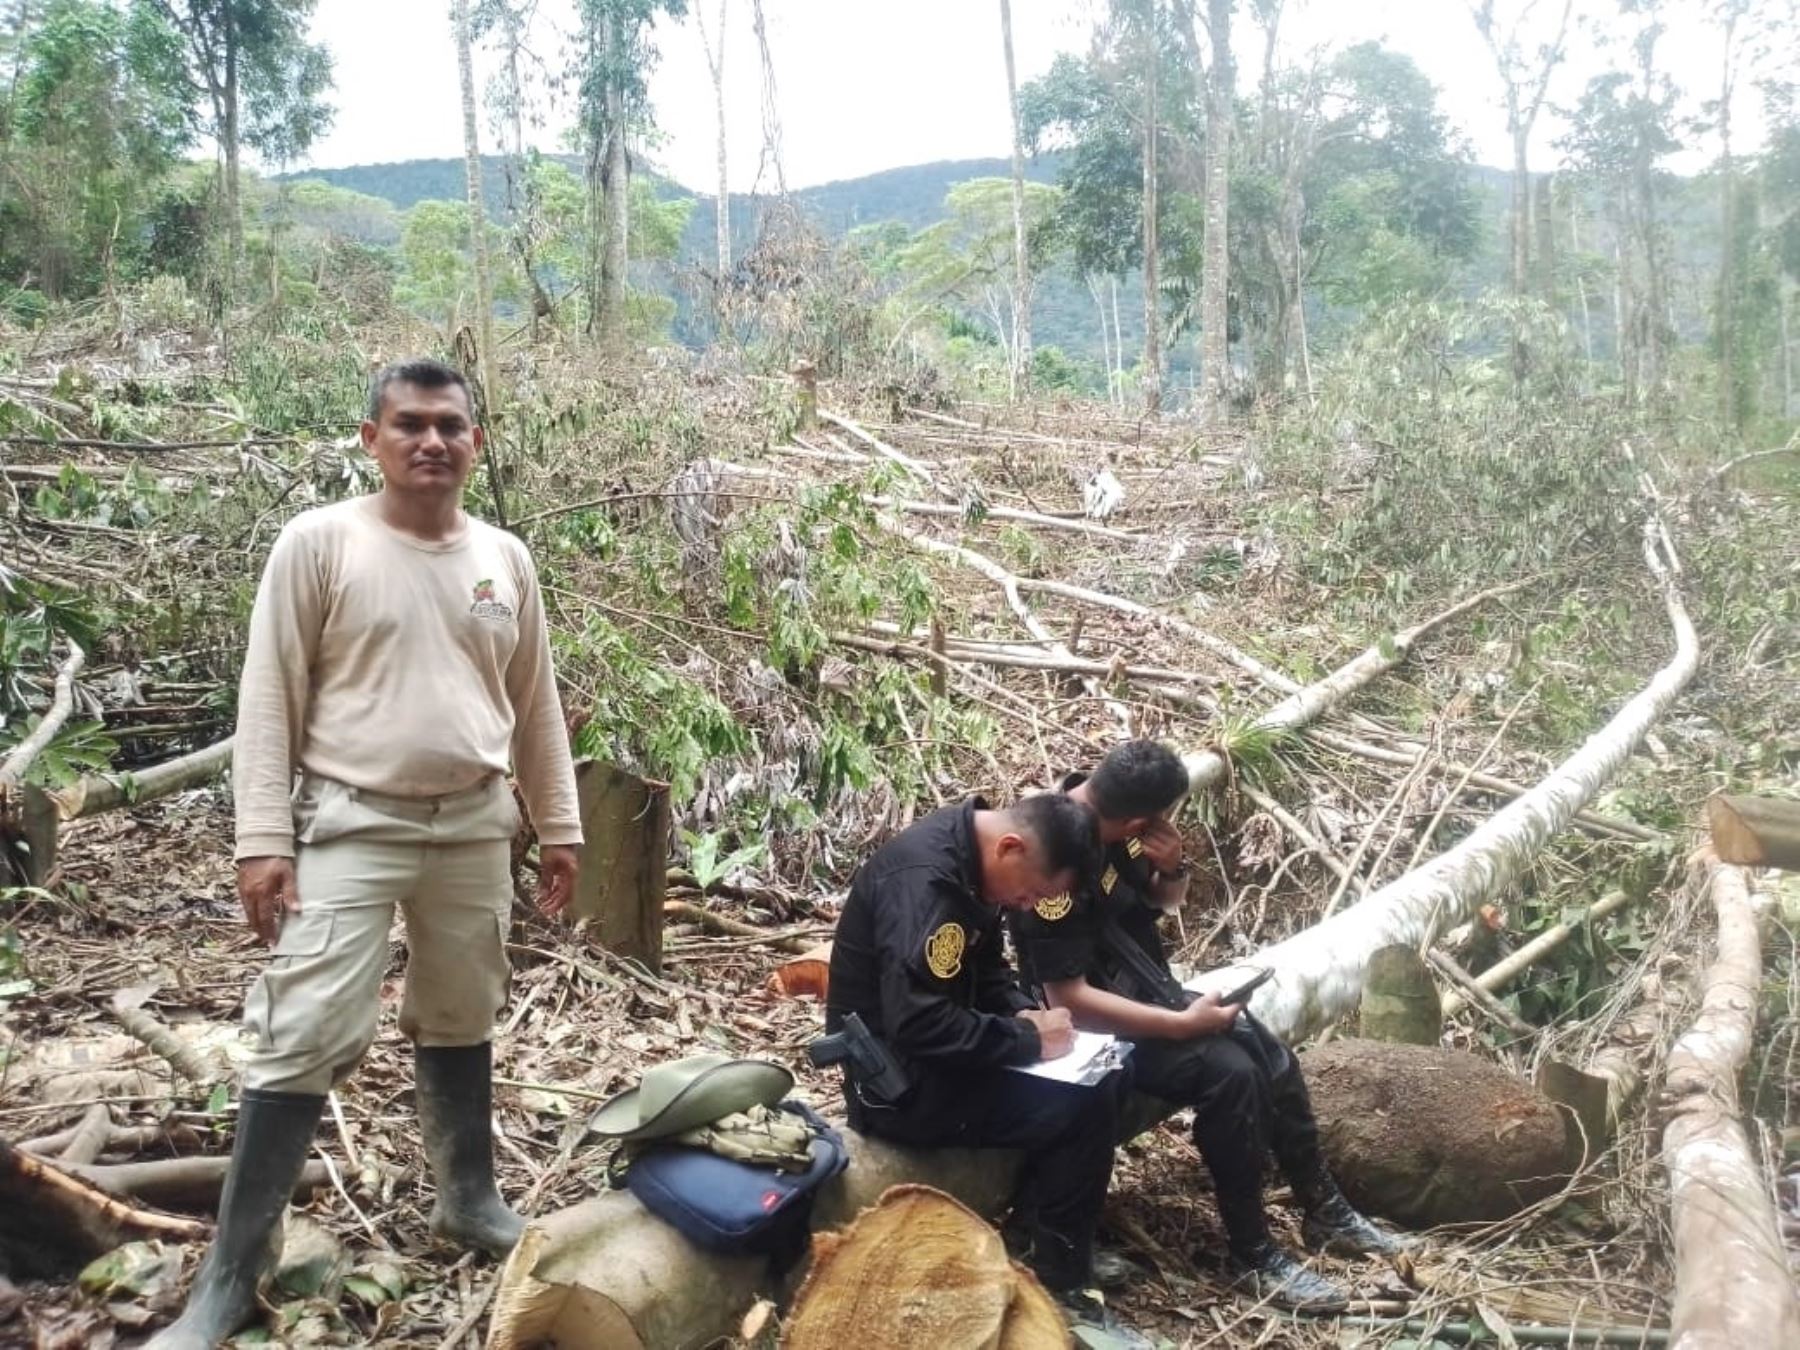 Más de 500 árboles de especies forestales nativas fueron talados ilegalmente, empleando una motosierra, por desconocidos en el interior del área de conservación regional Cordillera Escalera, en San Martín. Foto: ANDINA/difusión.